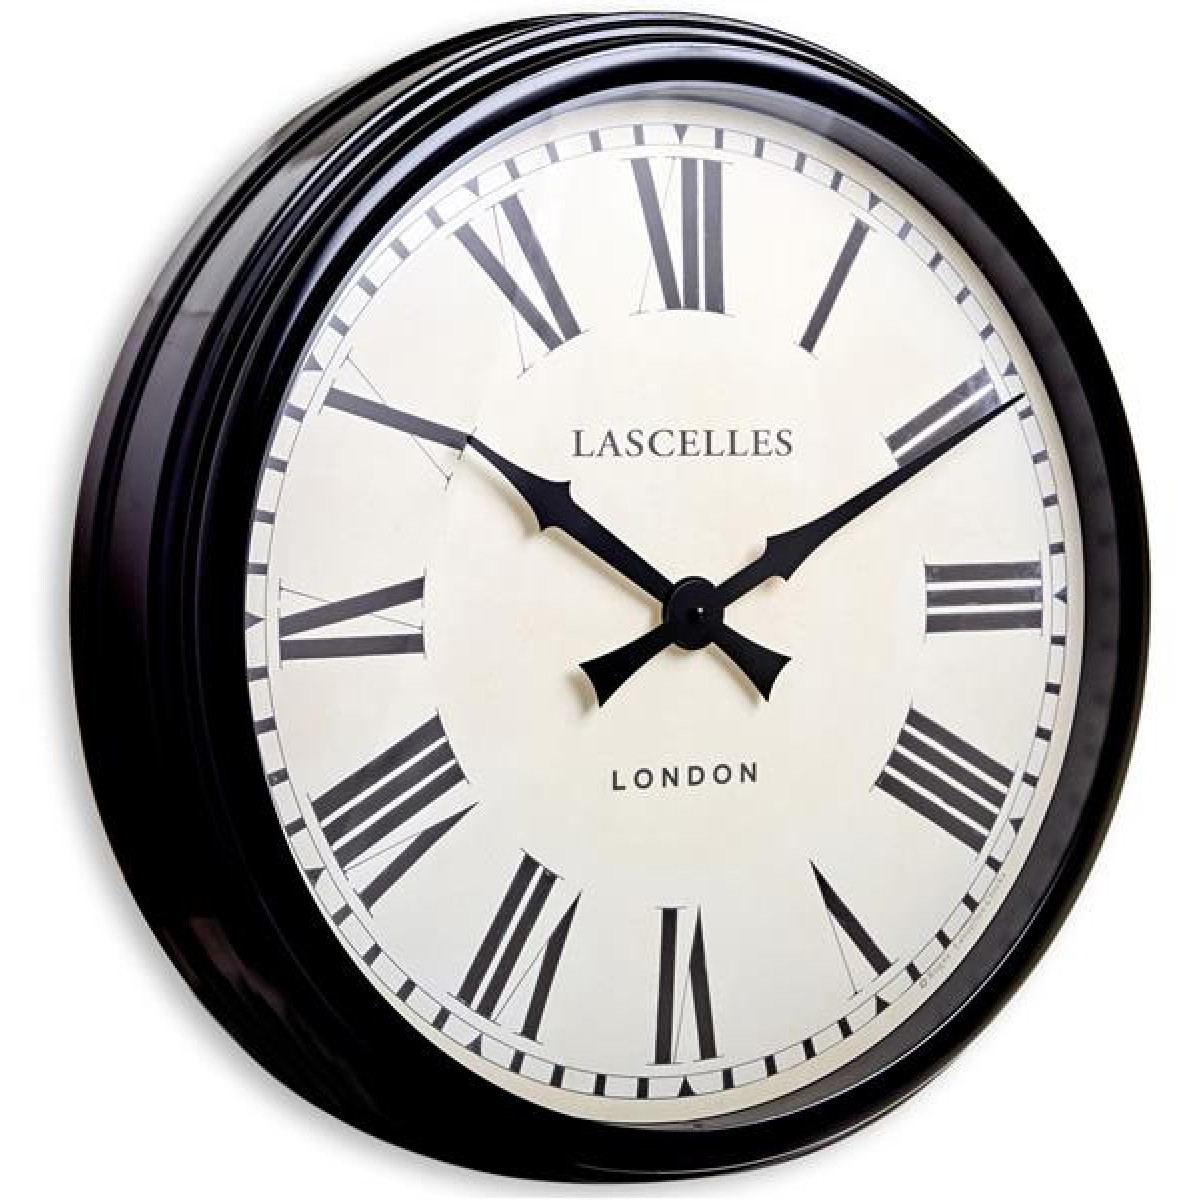 Настенные часы Smith & co. Часы Roger Lascelles Clocks ot London. Часы классика метал Люкс. 58 Часов. 8 58 часов